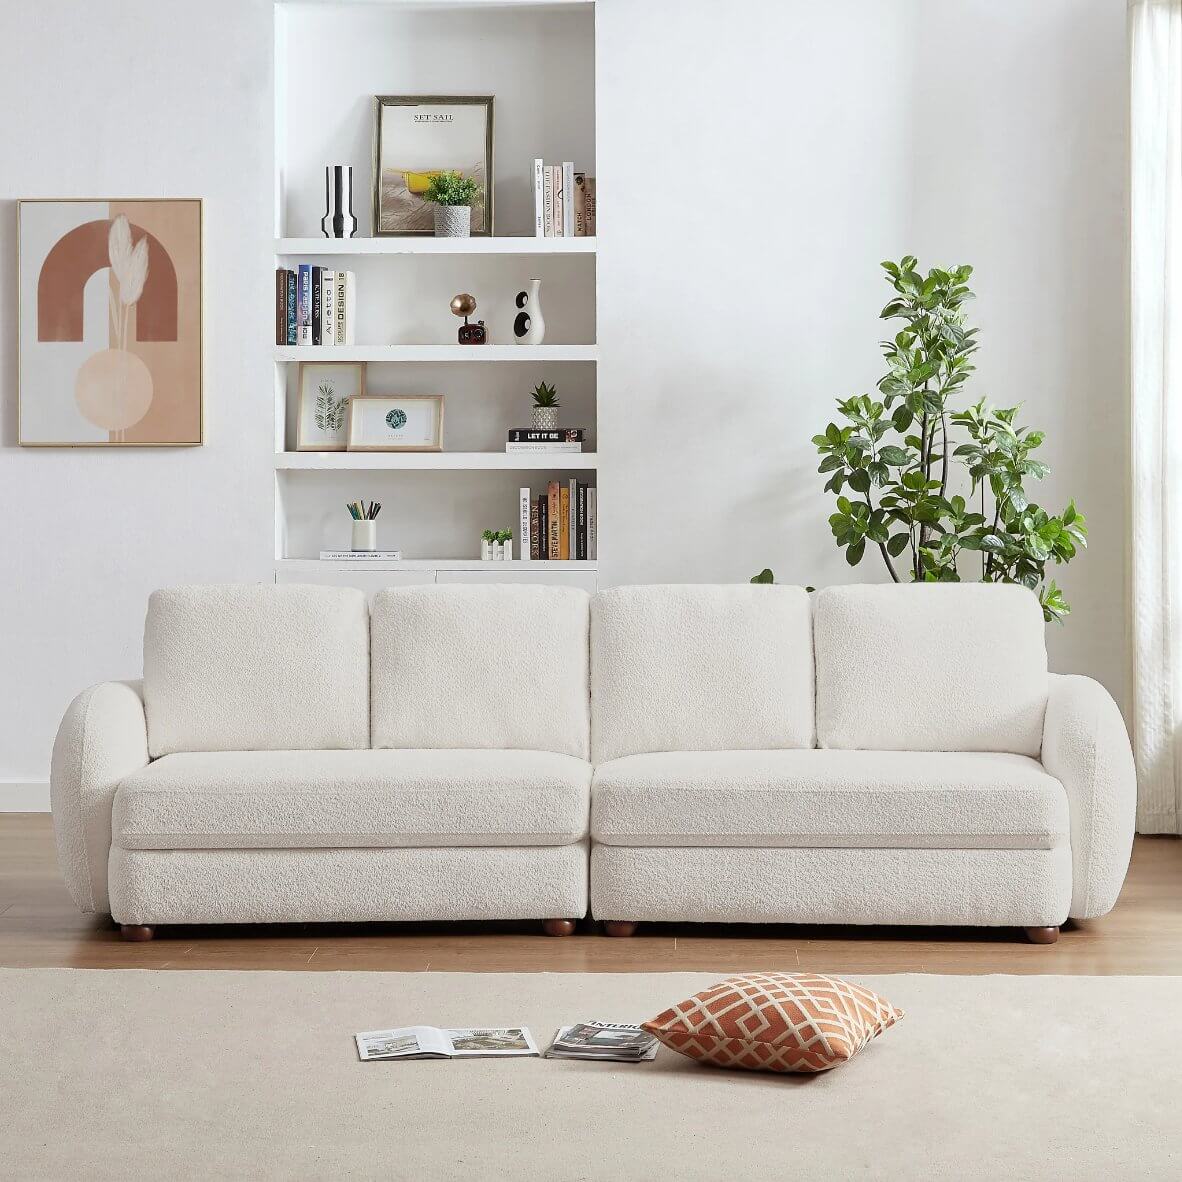 Paton MCM Style Boucle Fabric 4 Seater Sofa 114” - Revel Sofa 